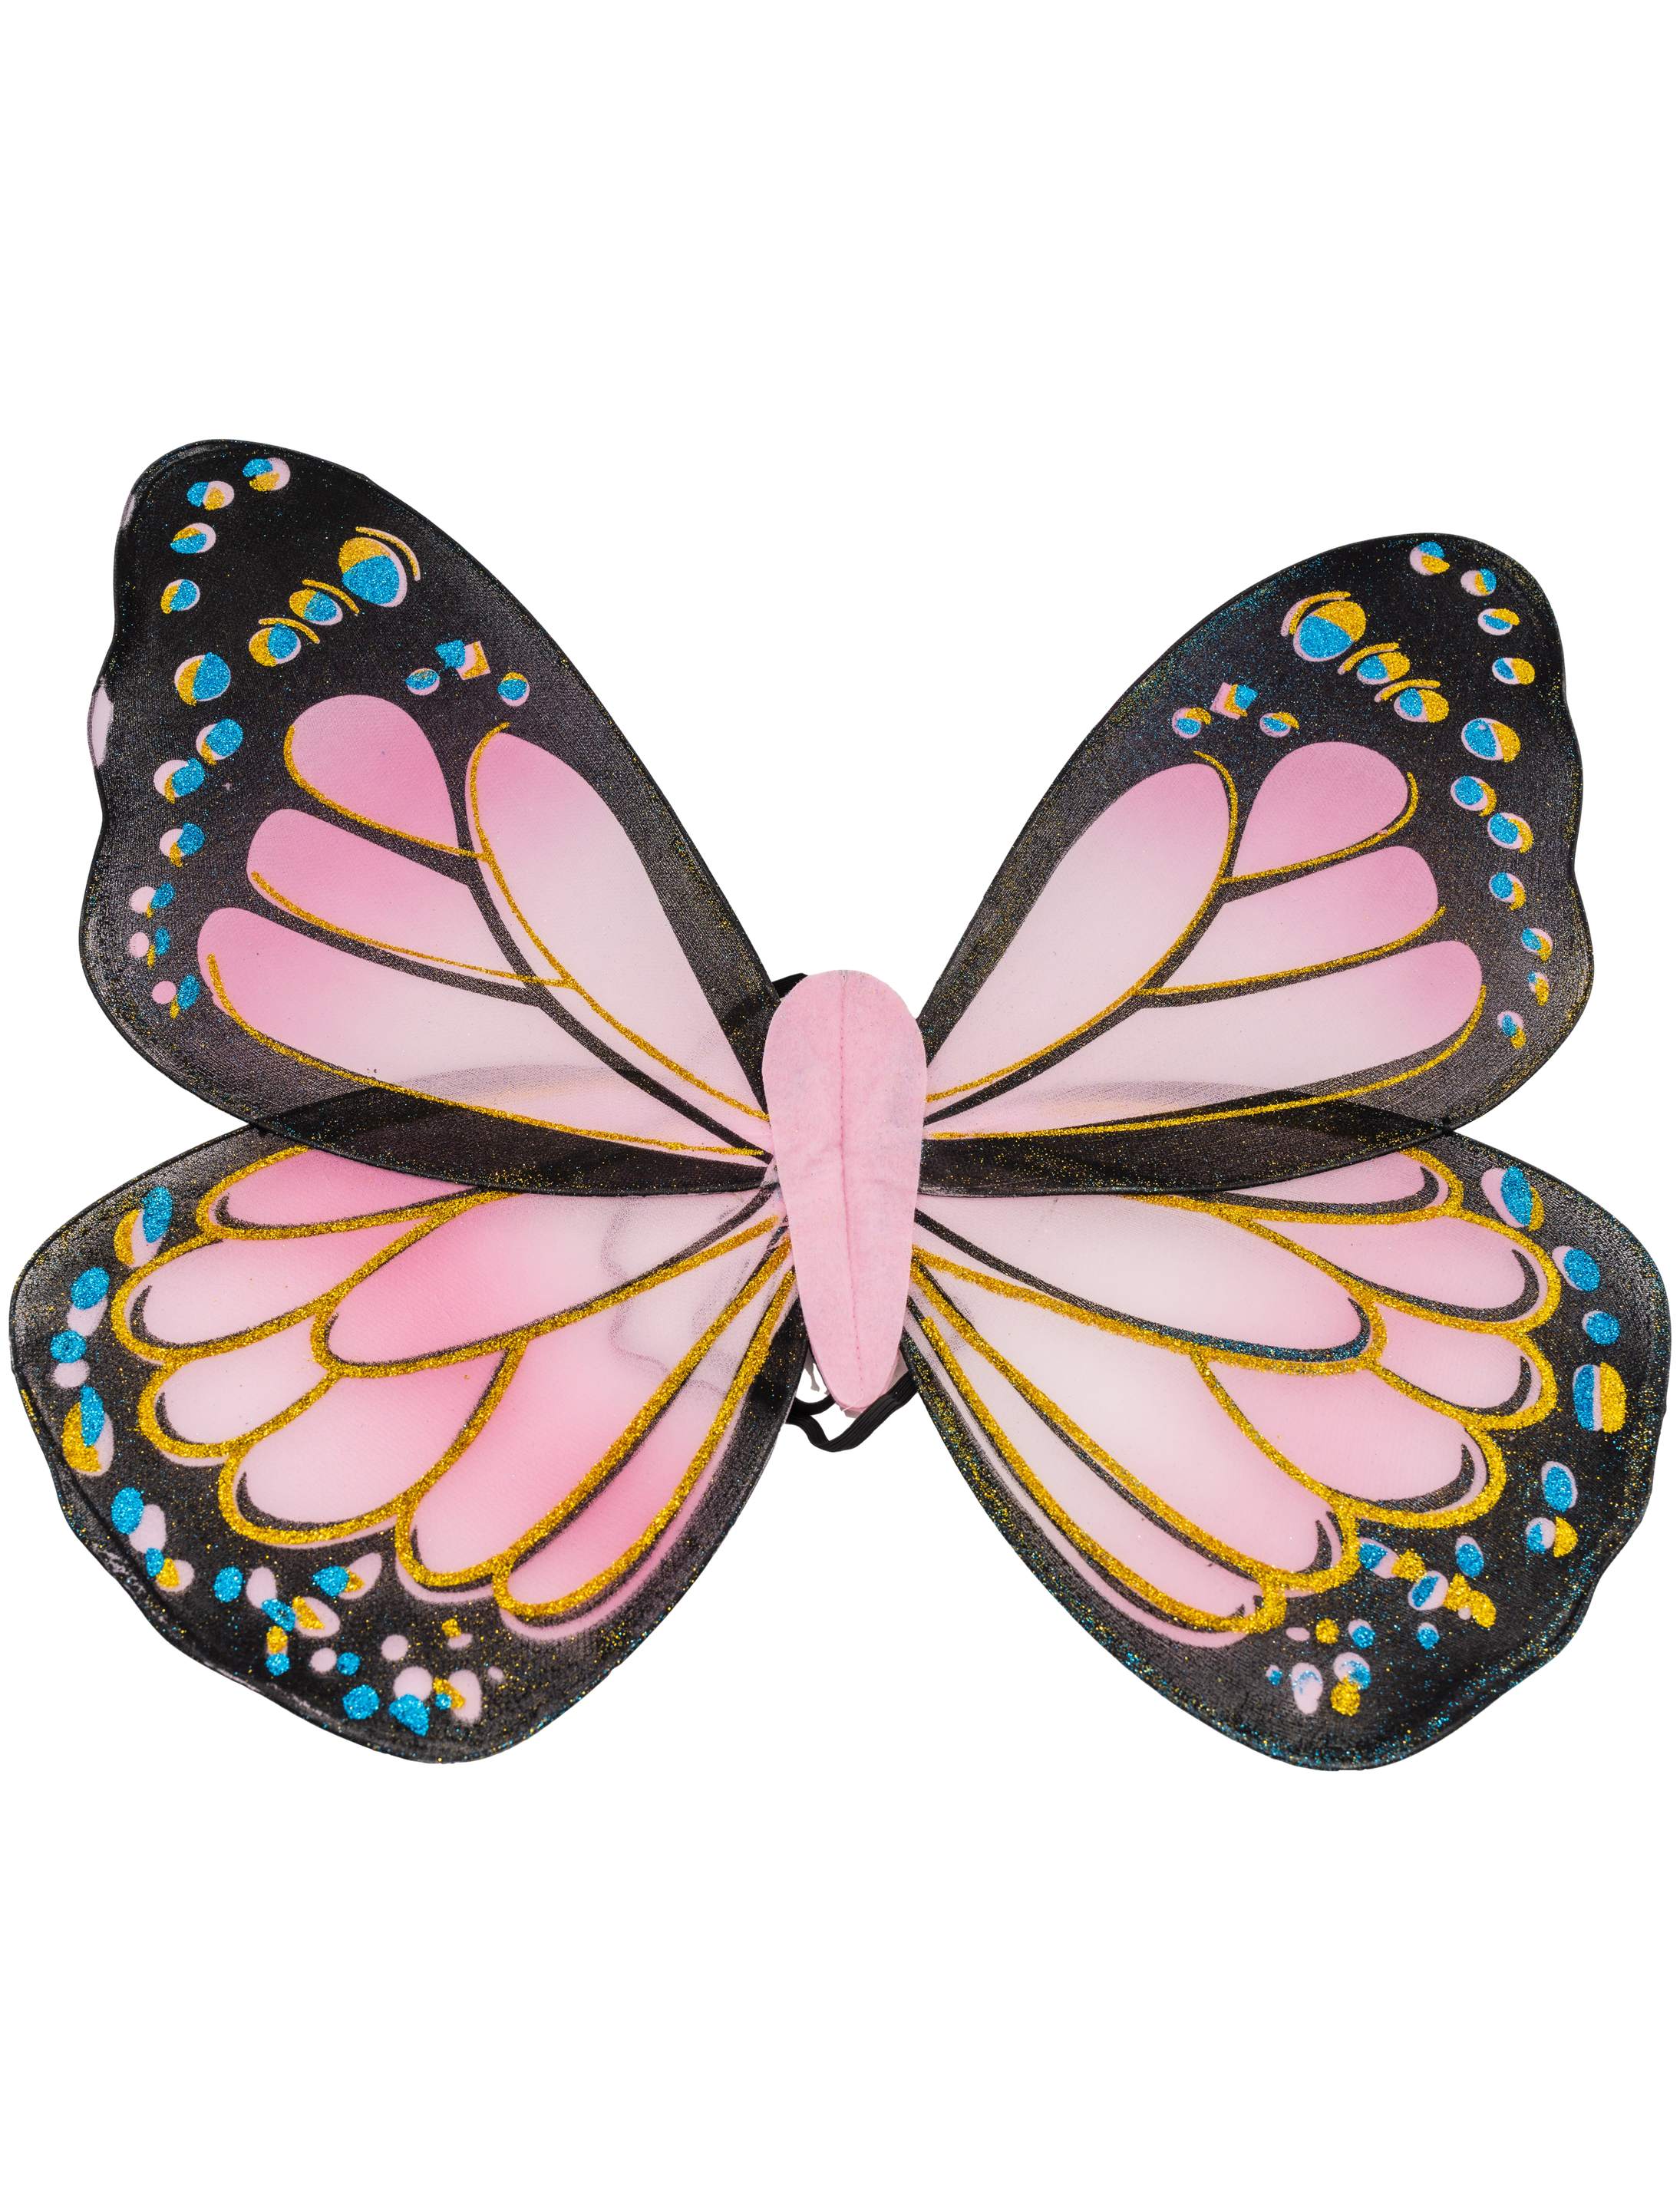 Schmetterlingsflügel pink/schwarz 59 x 51 cm